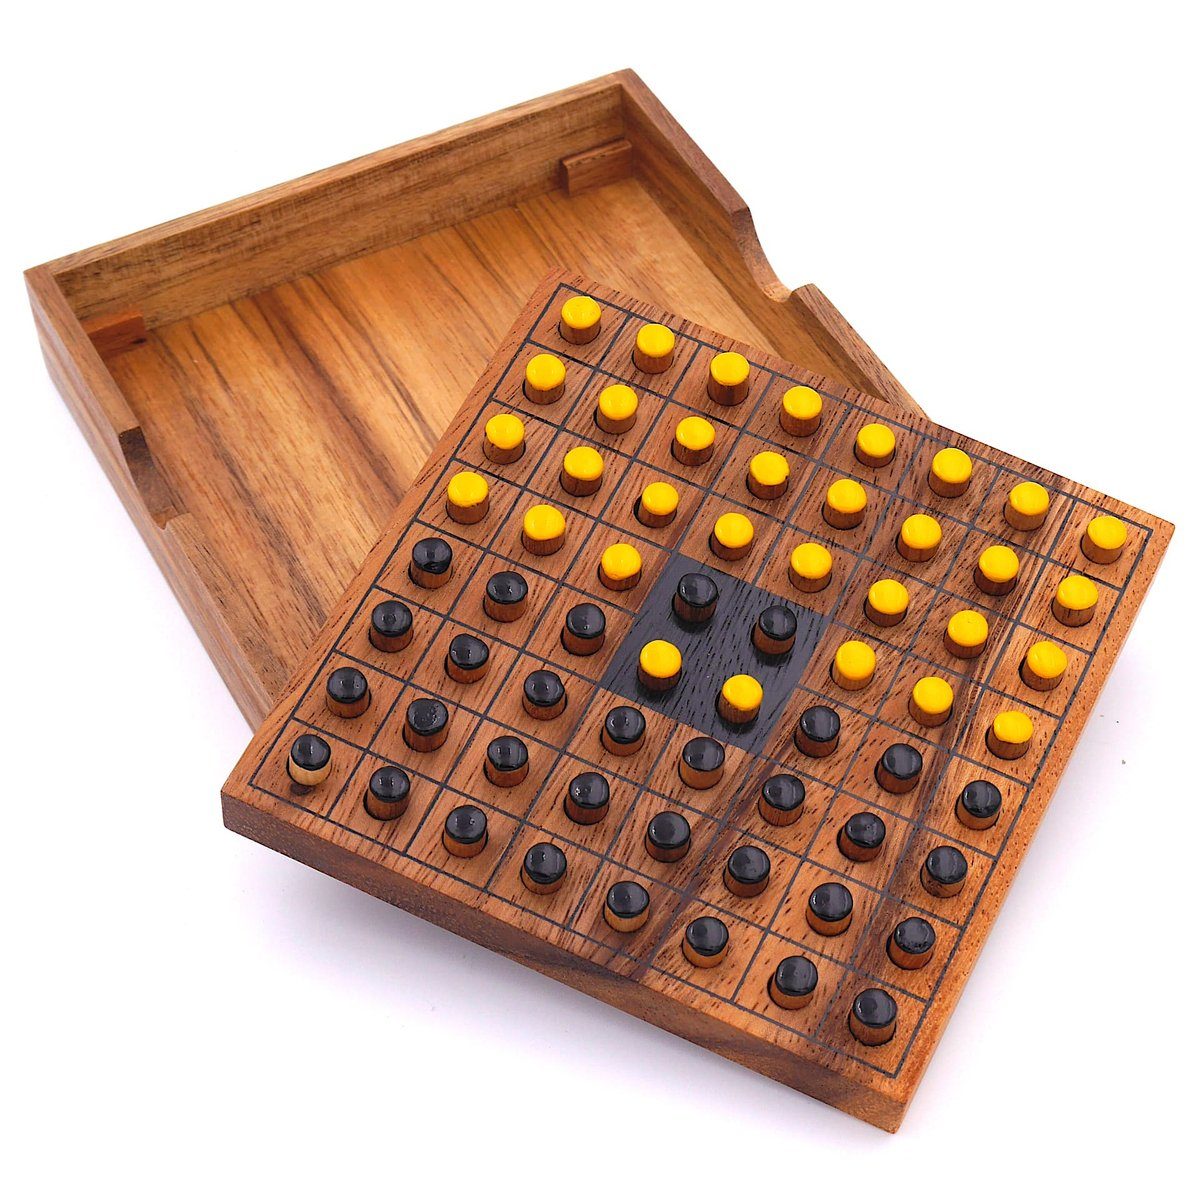 ROMBOL aus – Interessantes Holz, Spiel, Denkspiele Reversi Holzspiel für Brettspiel Strategiespiel 2 Personen gelb/schwarz edlem